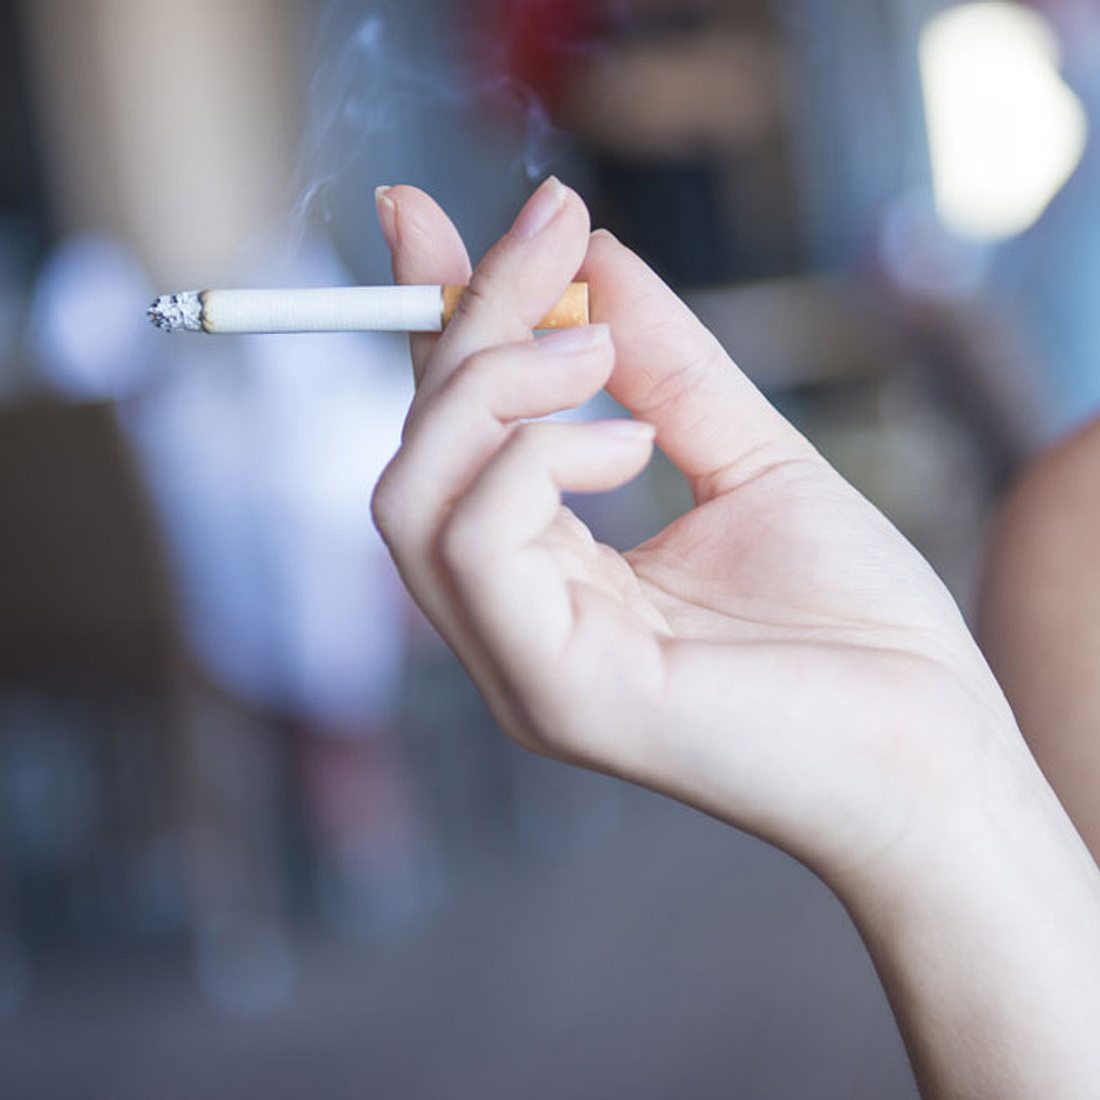 Teenager ziehen an fremder Zigarette - Zusammenbruch! 